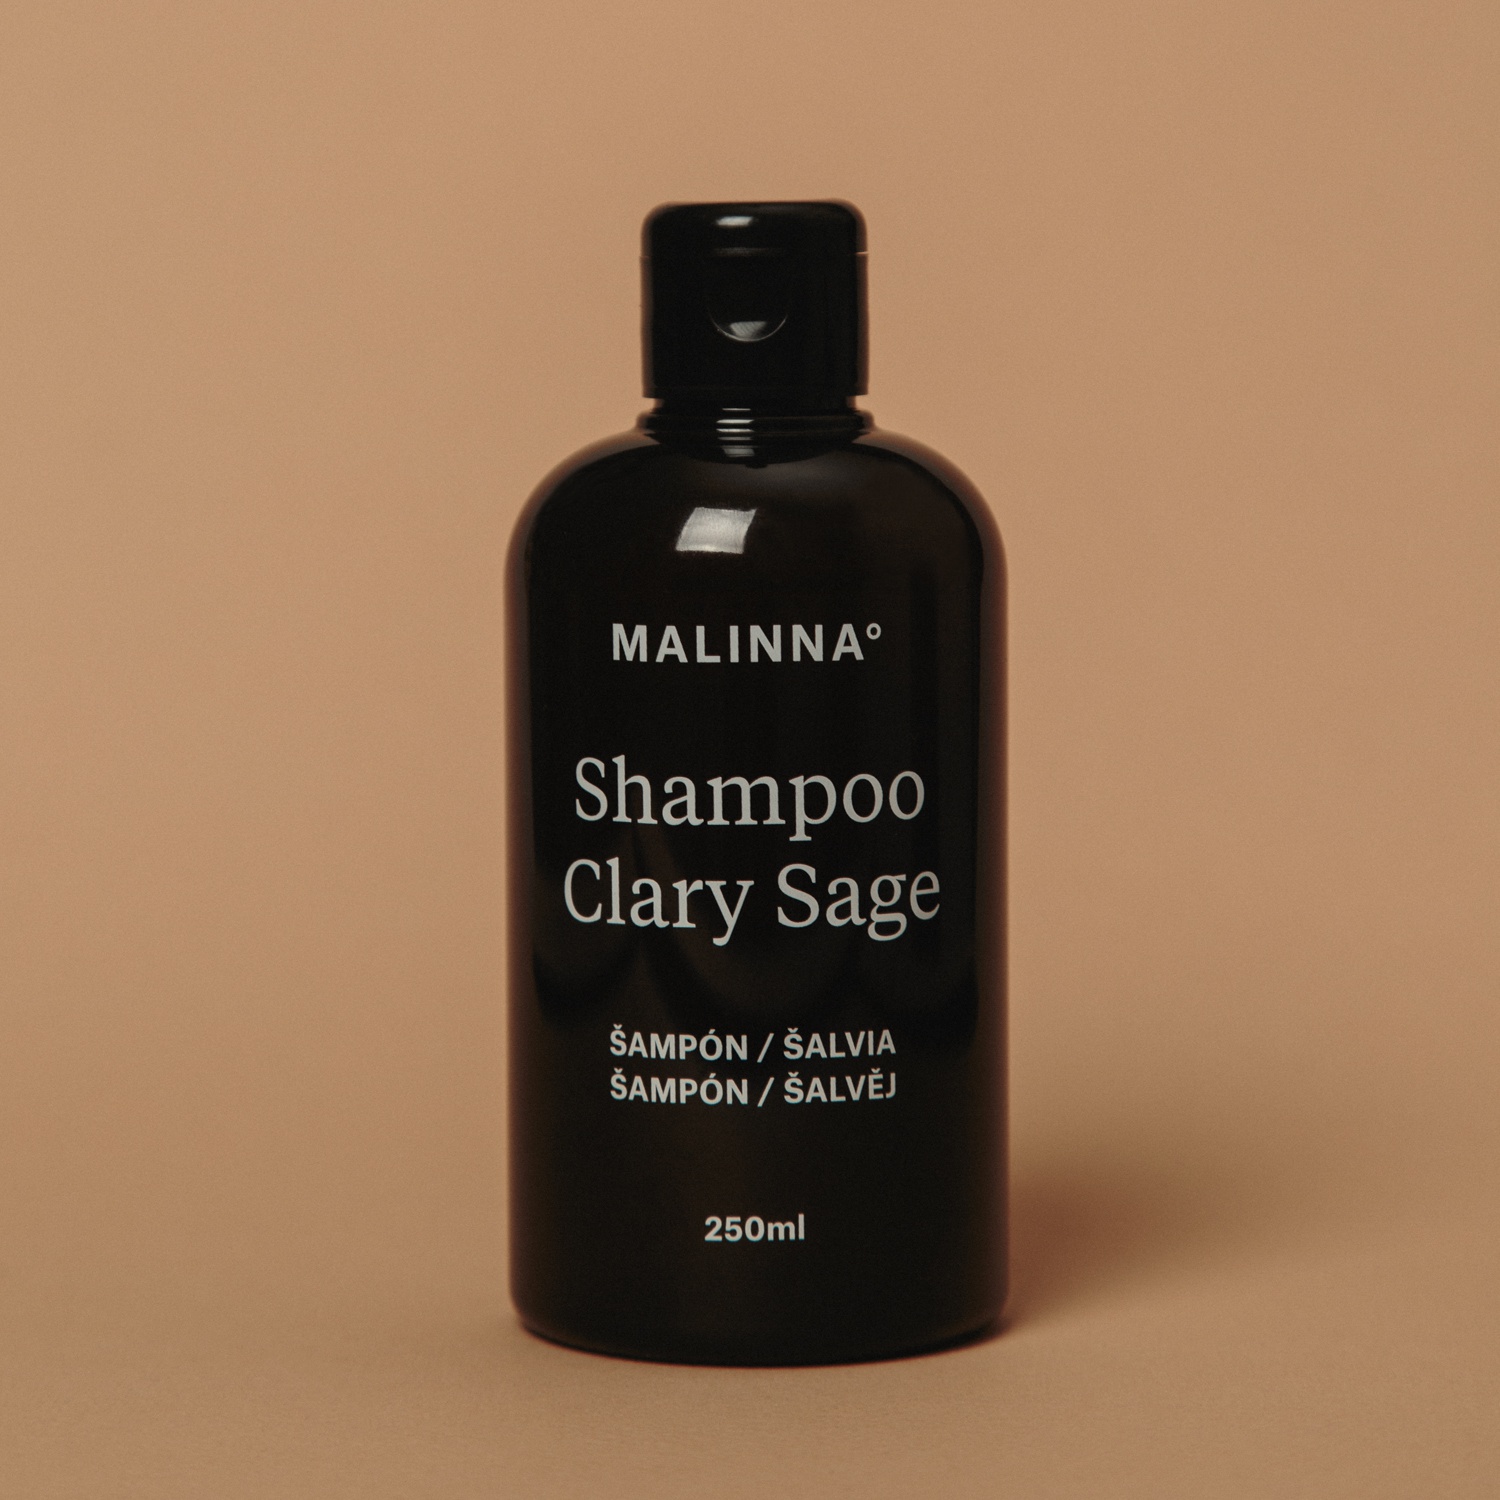 MALINNA° Shampoo Clary Sage